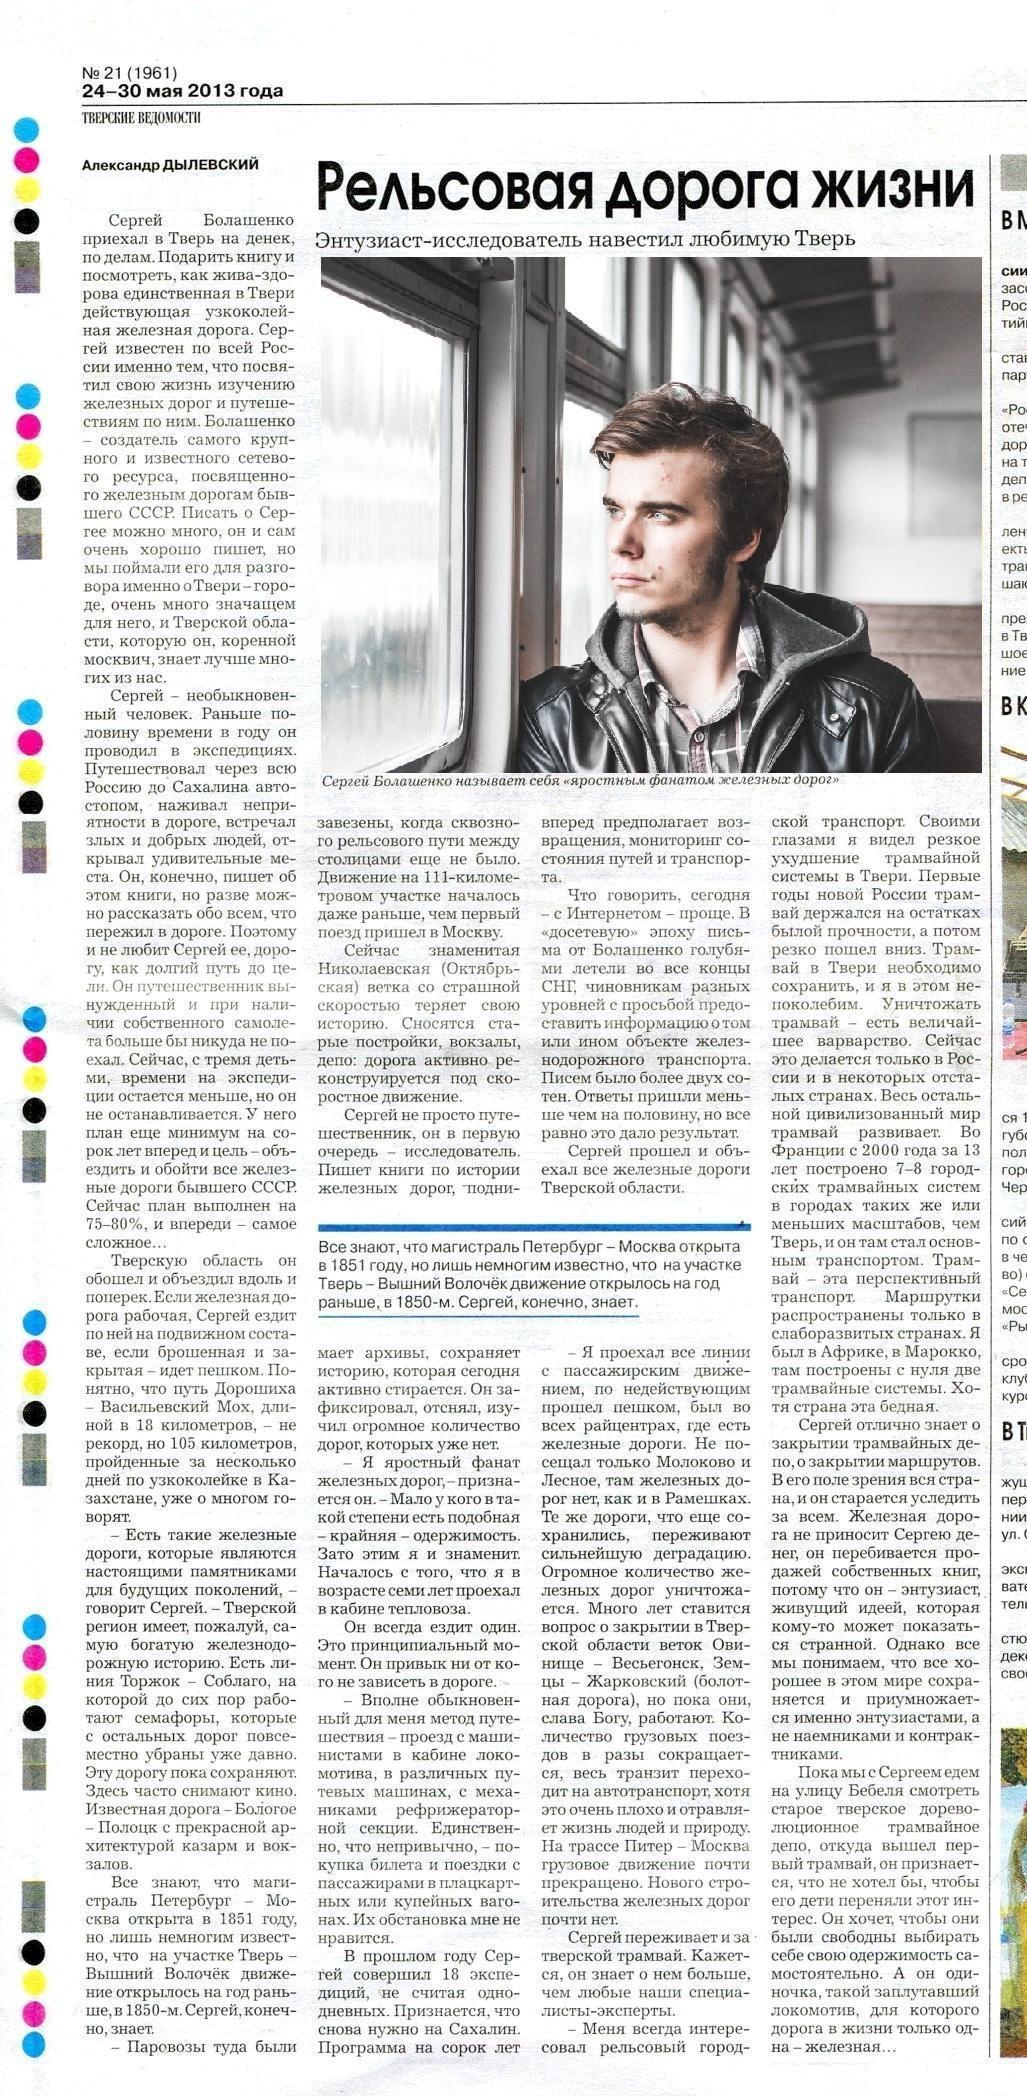 Публикация в газете «Тверские Ведомости», посвящённая автору «Сайта о железной дороге», 2013 год